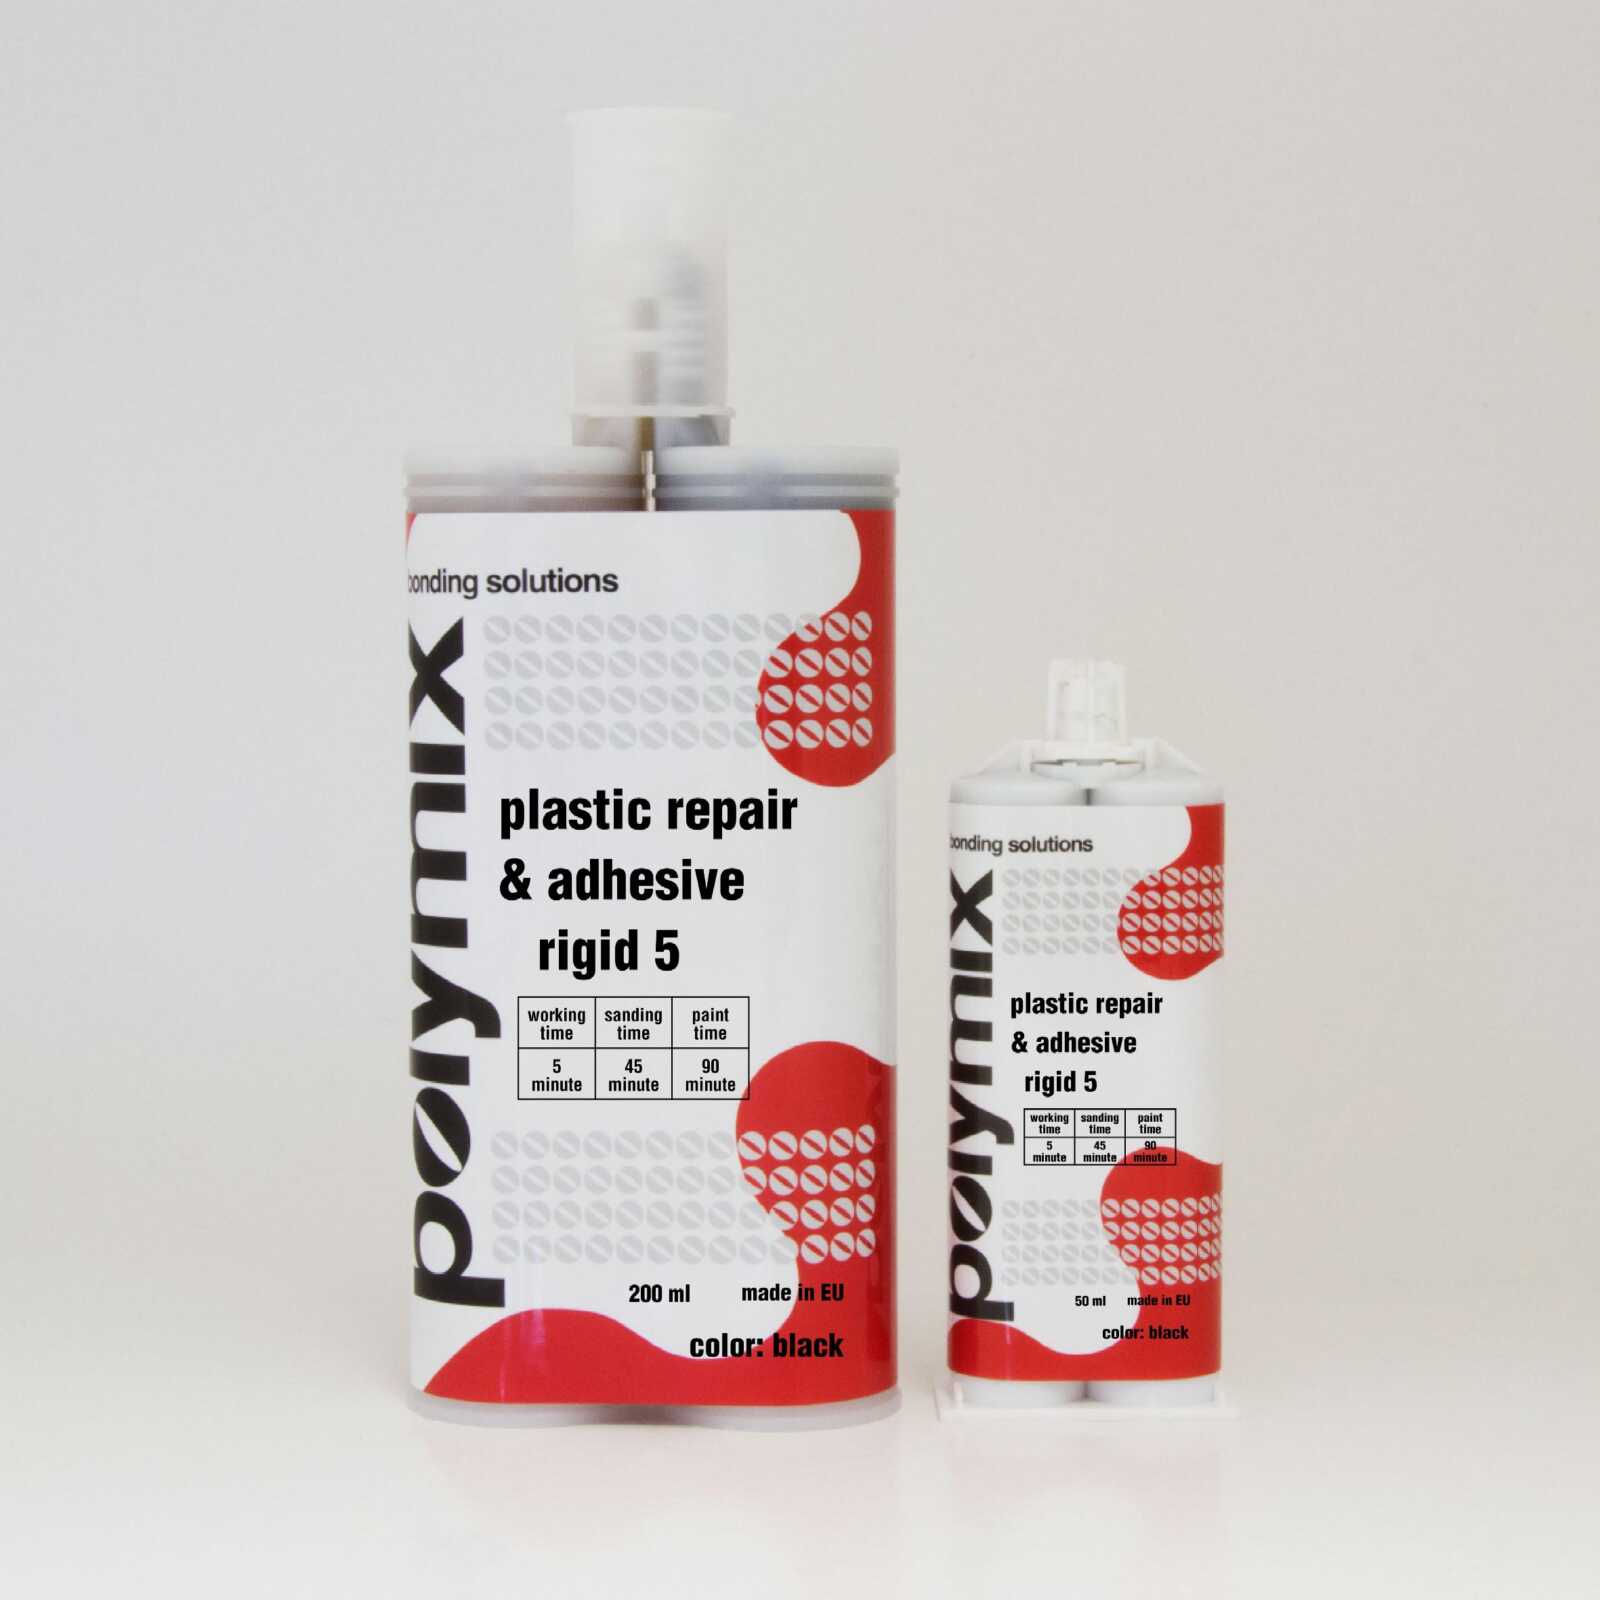 POLYMIX Plastic Repair & Adhesive Rigid 5 INCHIMICA